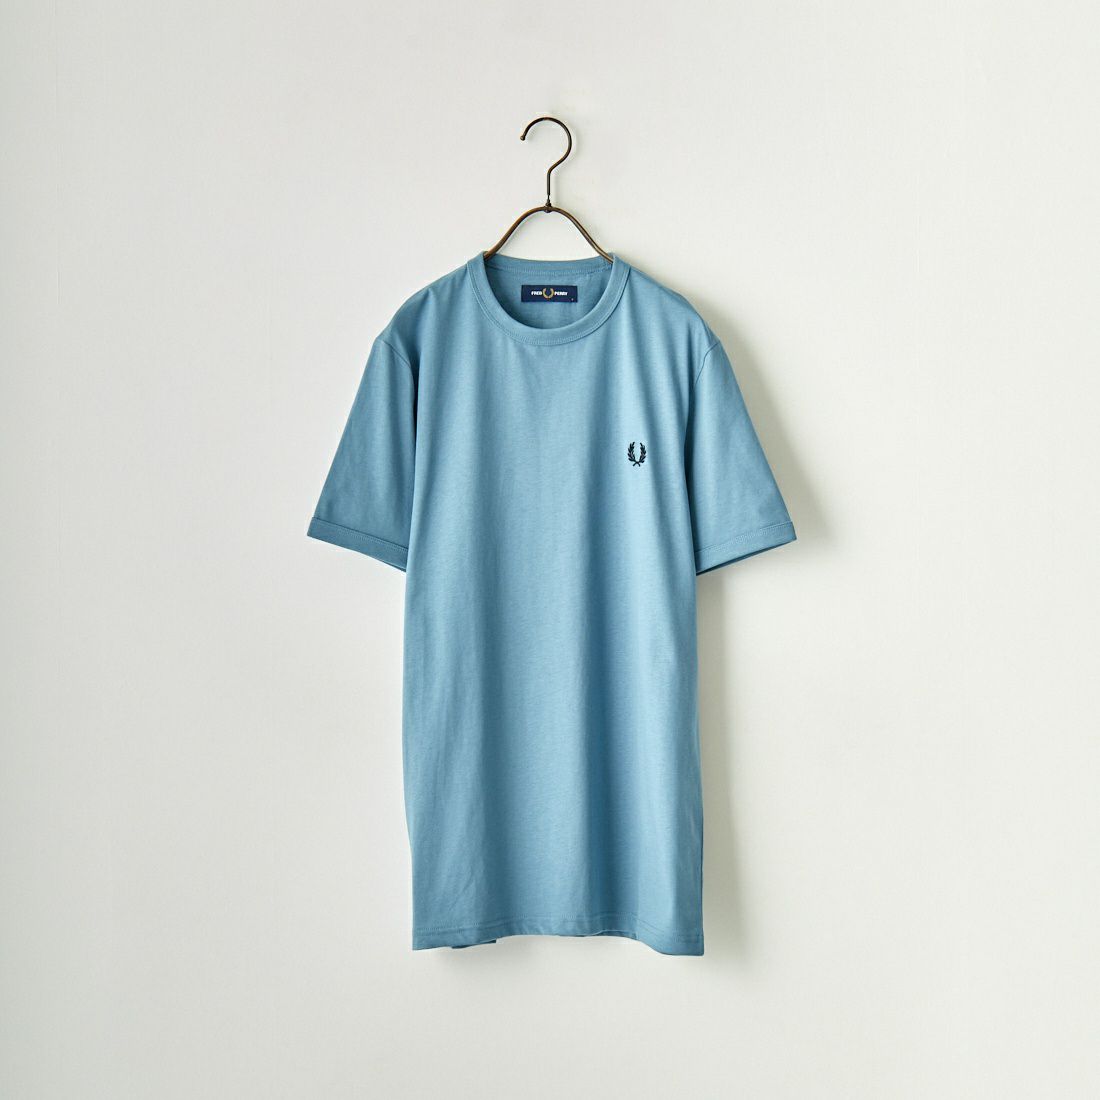 【最高デザイン】カーハートWIP ロゴ刺繍 ボーダーリンガーネック半袖Tシャツ